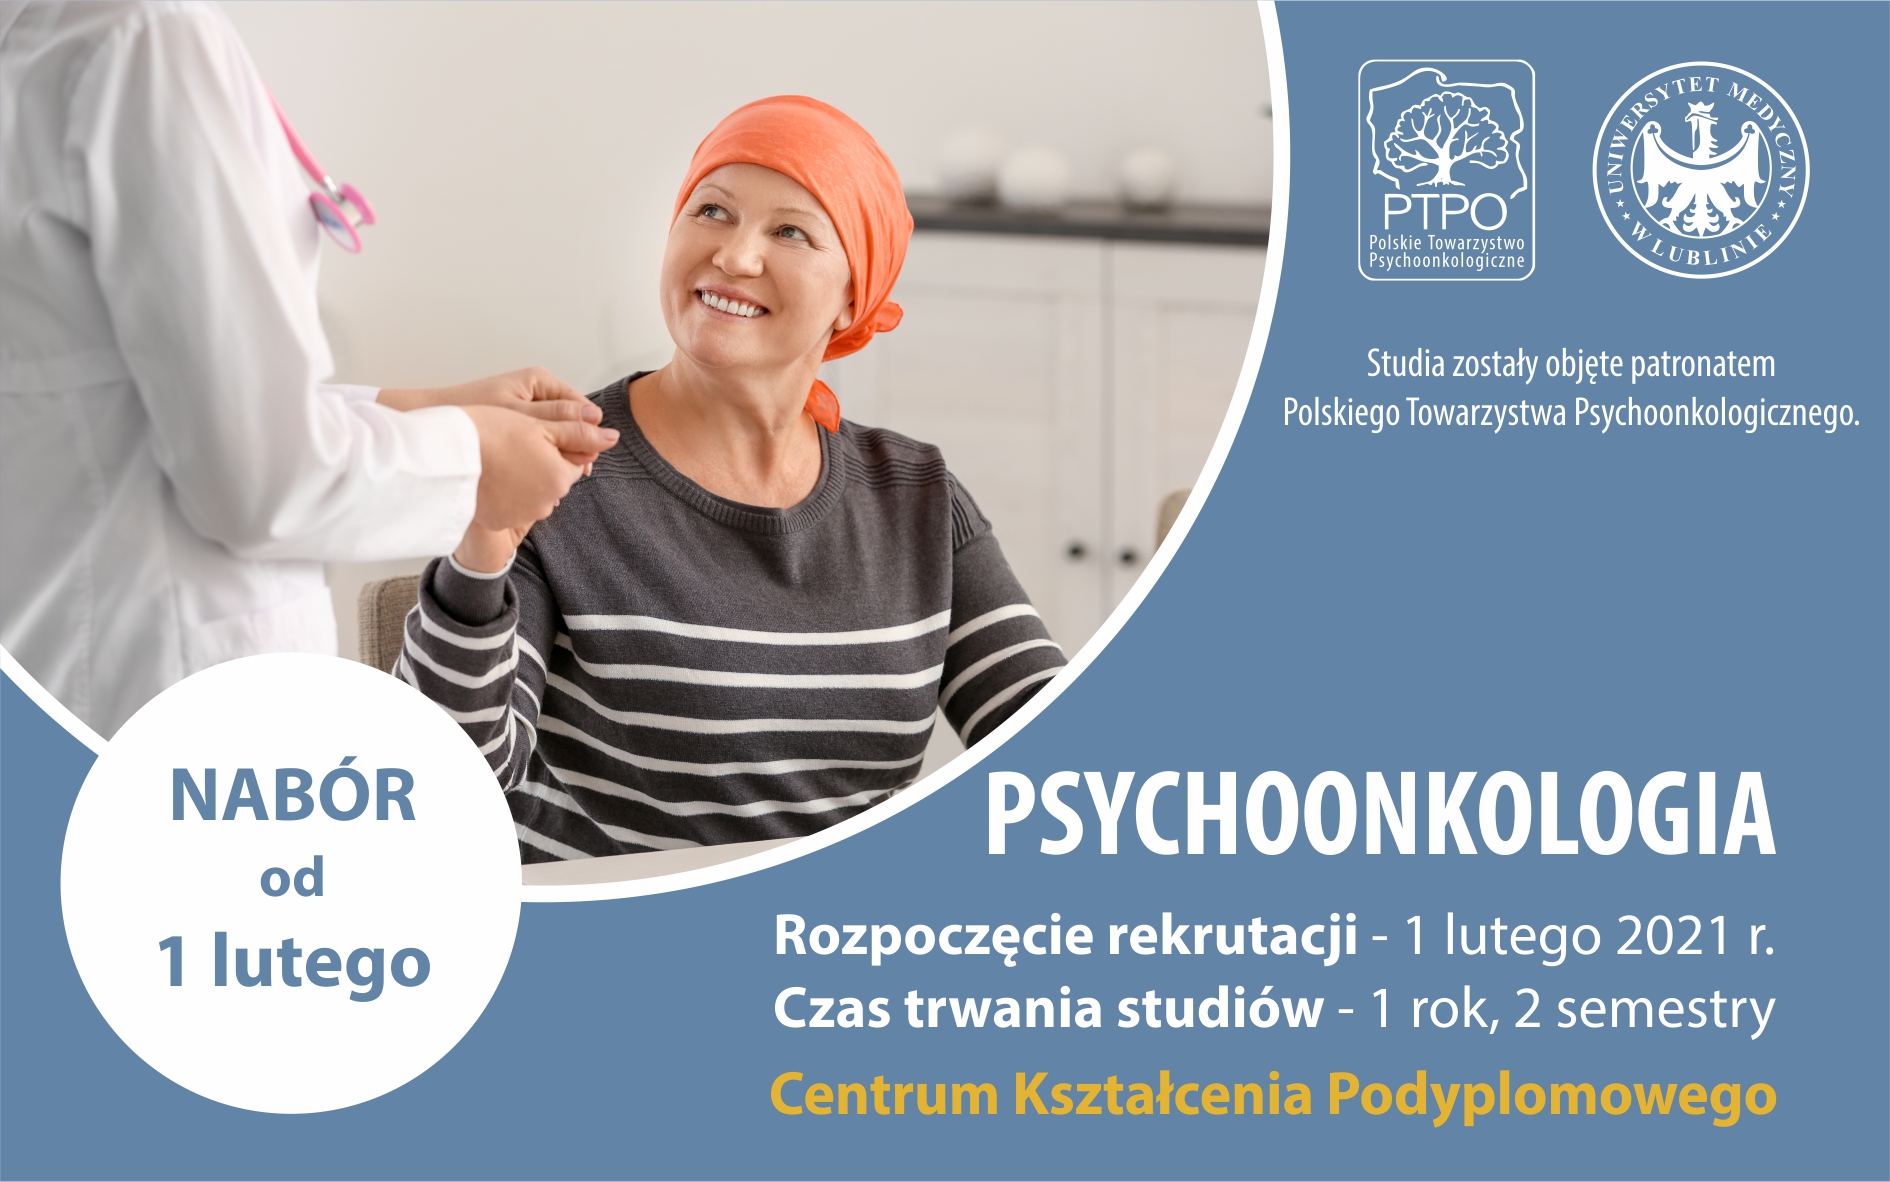 Lekarka podaje rękę kobiecie w chustce na głowie - plakat dla kierunku pschychoonkologia